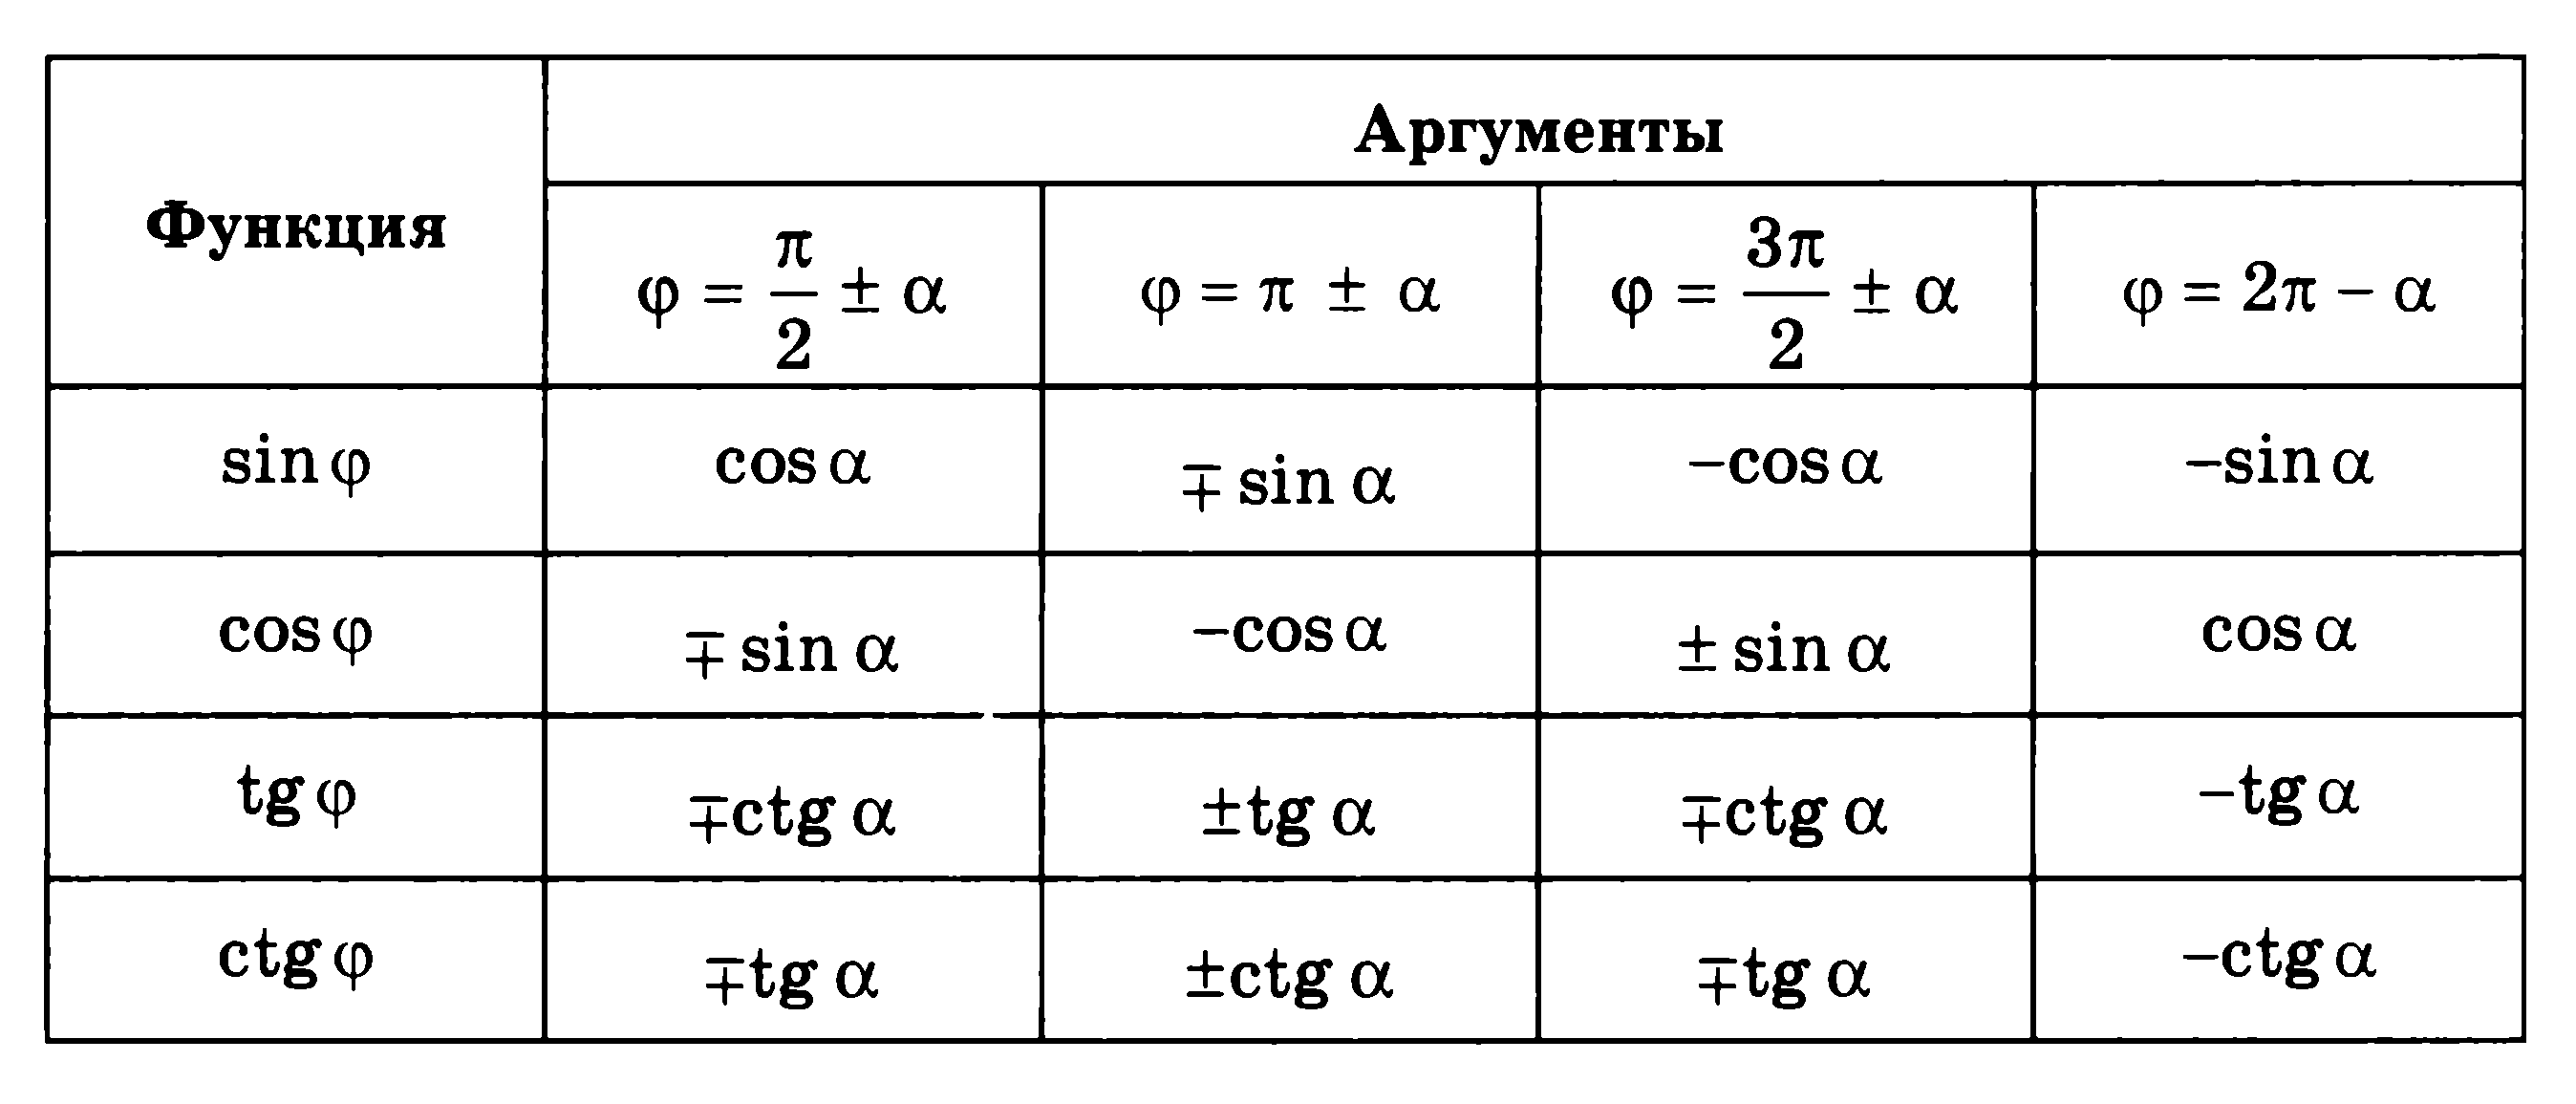 Тангенс пи плюс альфа. Формулы приведения в тригонометрии таблица. Таблица приведения синусов и косинусов. Таблица приведения тригонометрических функций. Формула приведения таблица функция.